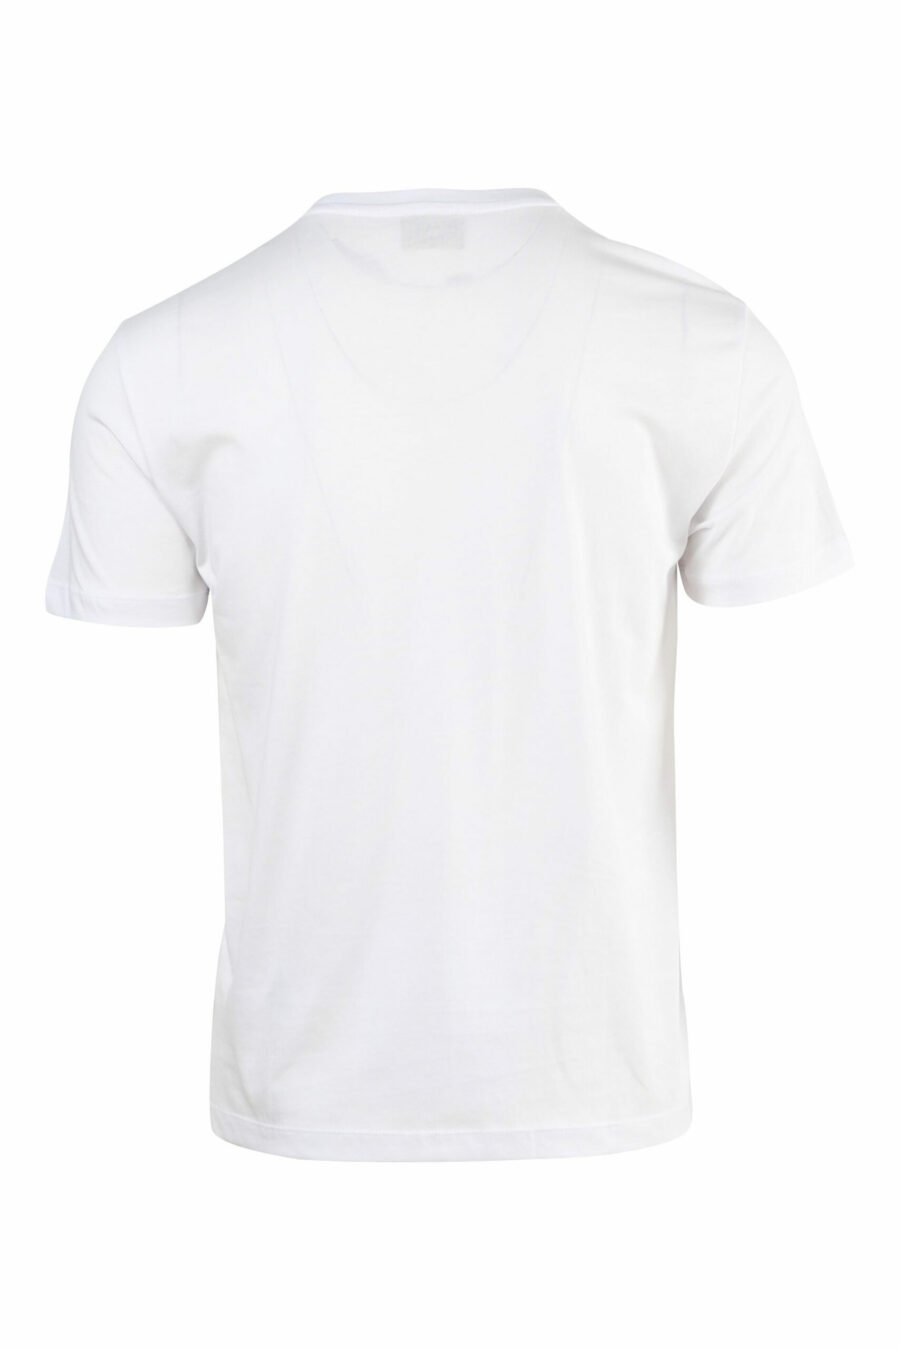 T-shirt blanc avec mini-logo doré "lux identity" - 8057767515720 à l'échelle